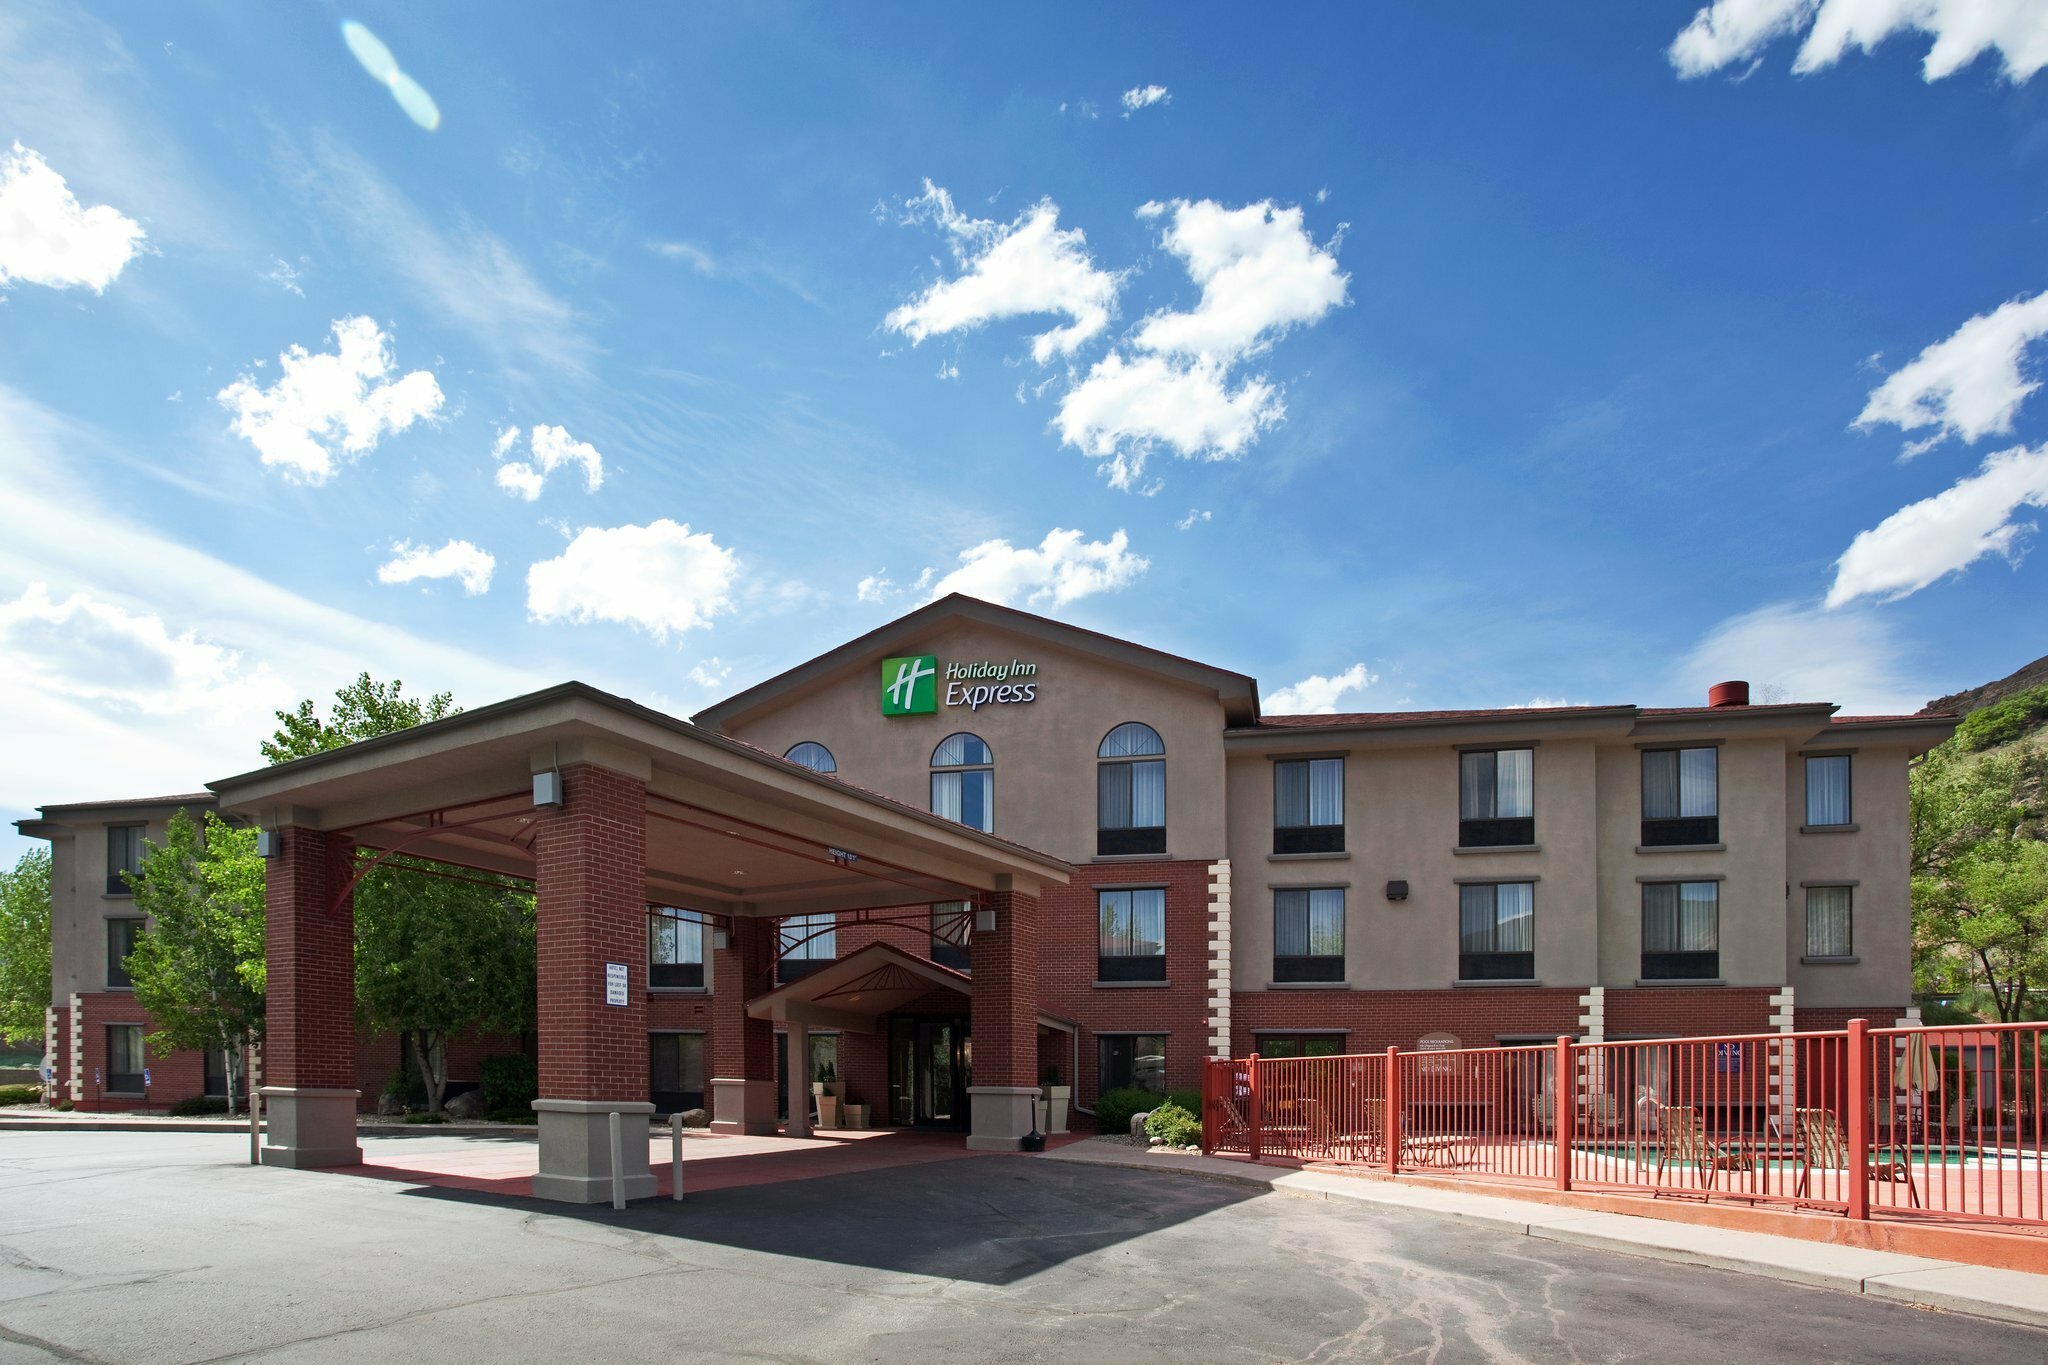 Photo of Holiday Inn Express Glenwood Springs (Aspen Area), Glenwood Springs, CO